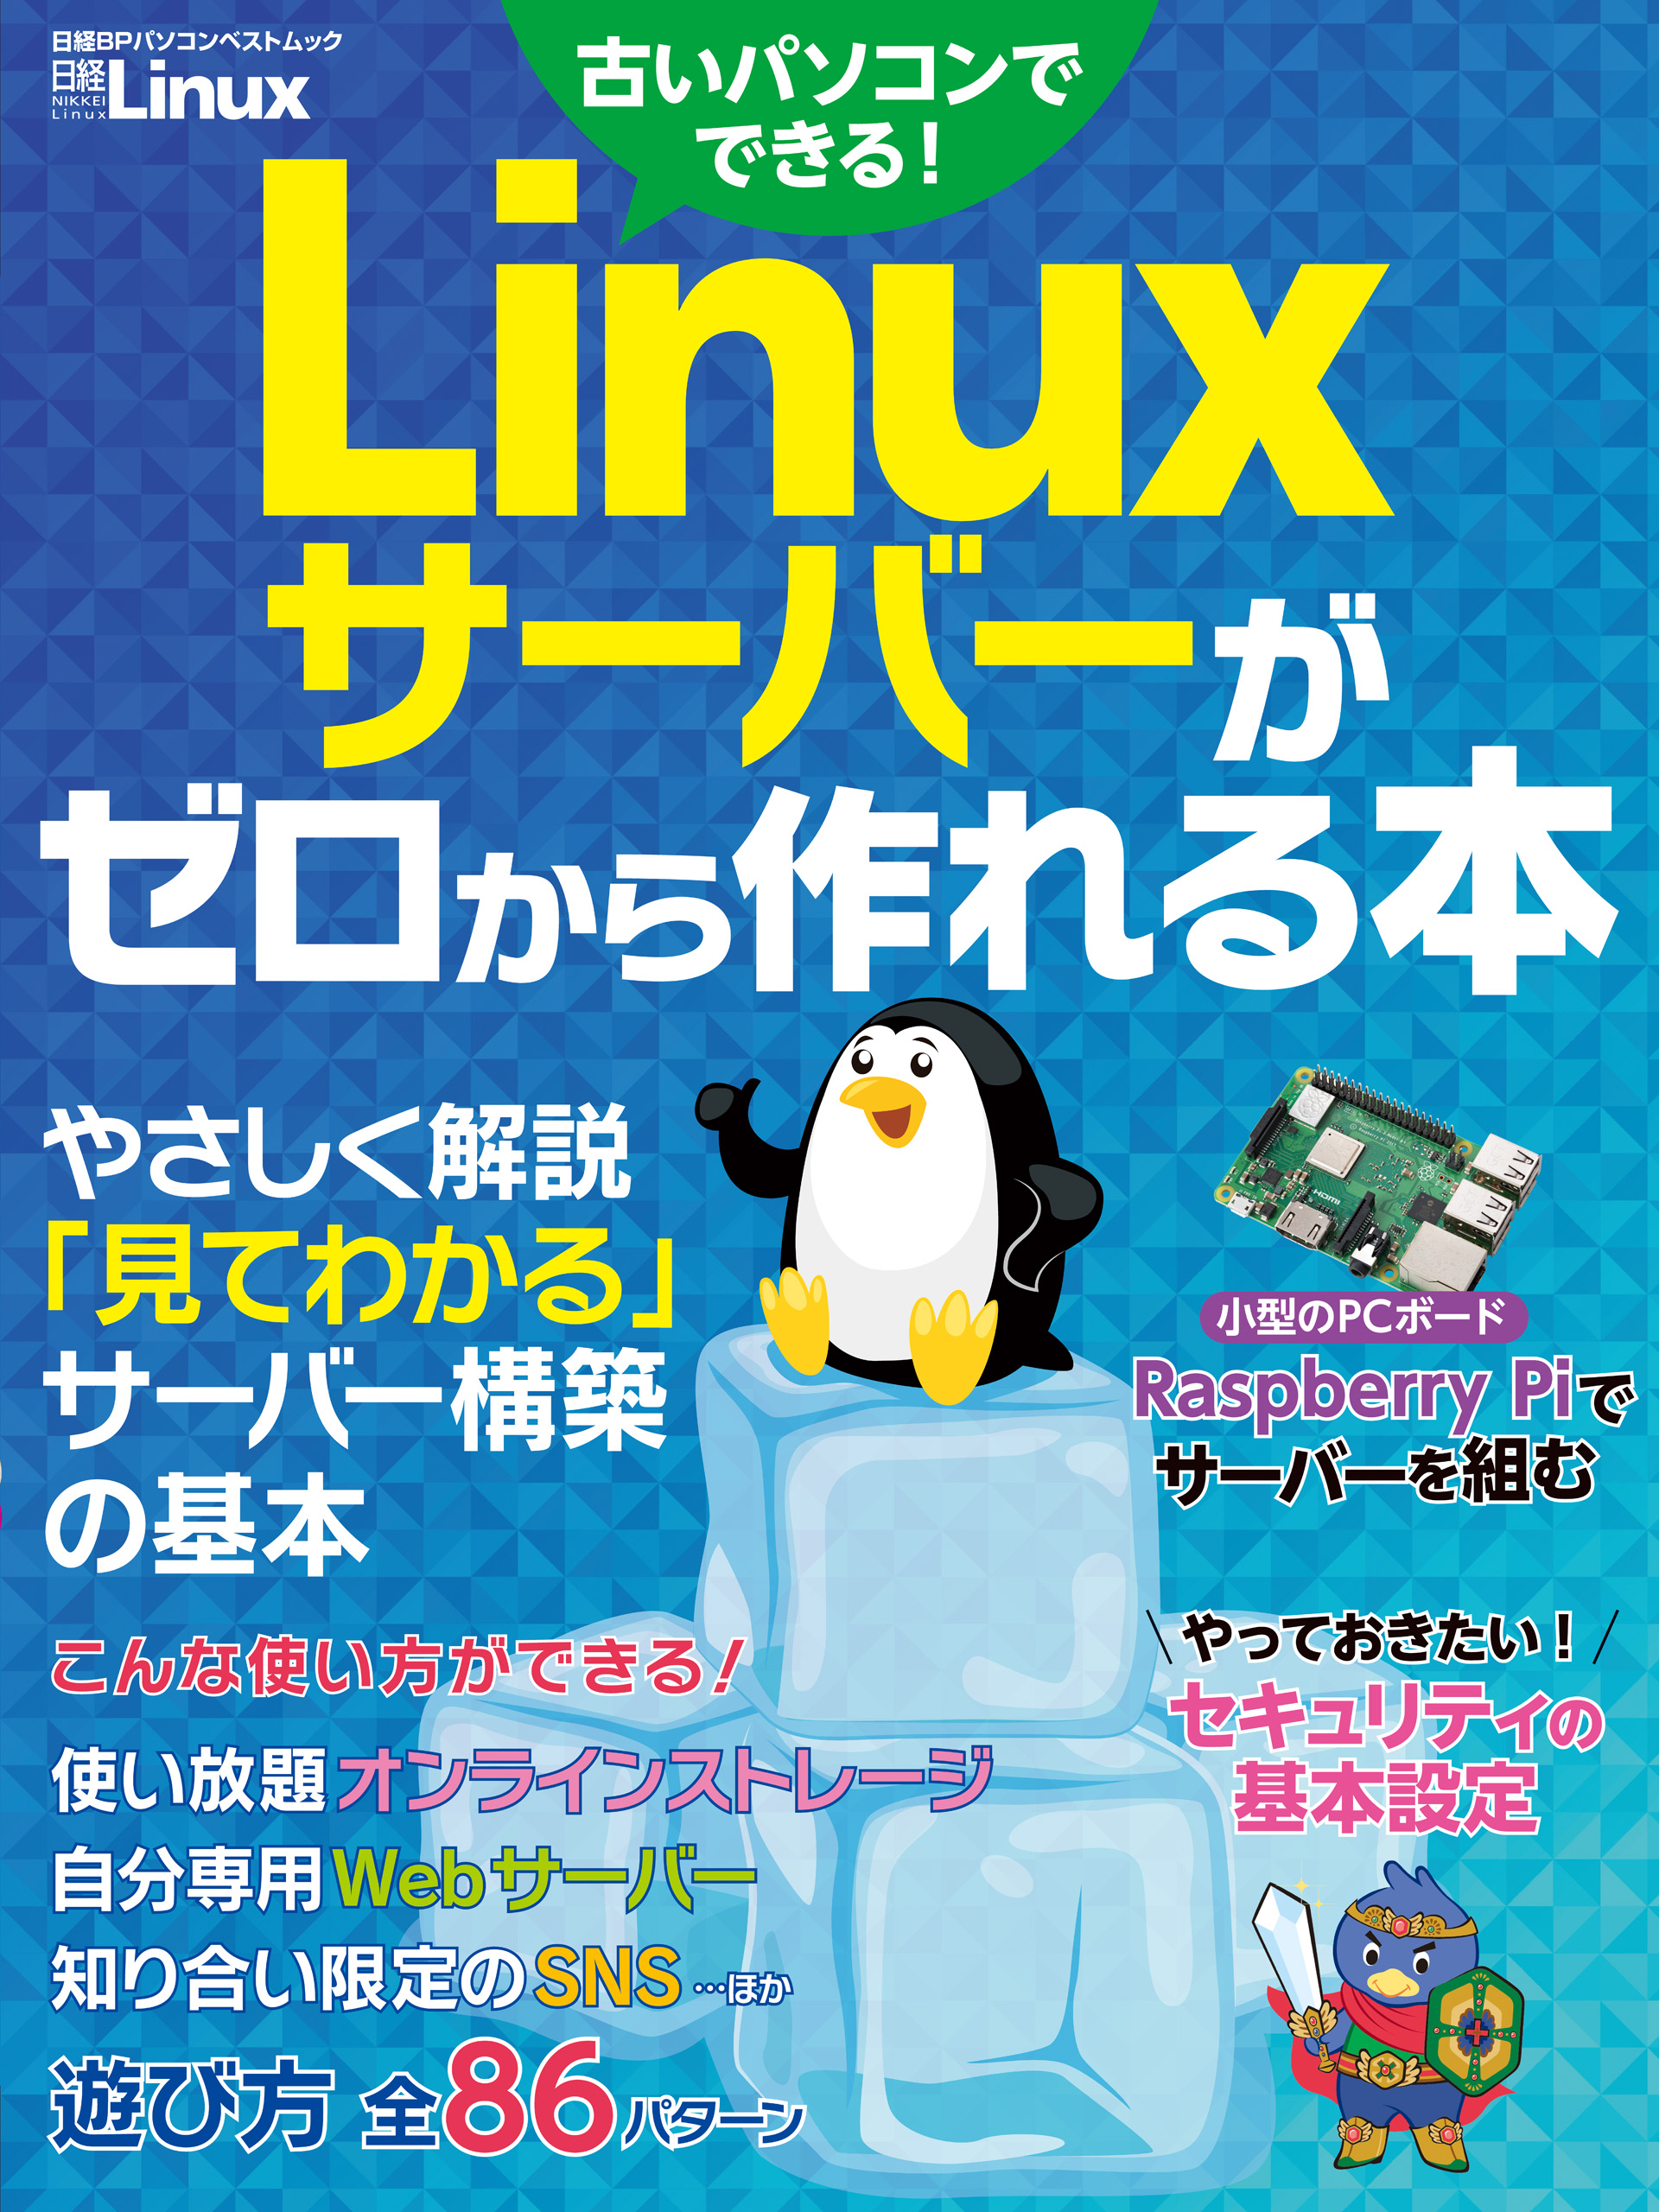 Linuxサーバーがゼロから作れる本 - 日経Linux - 漫画・無料試し読み